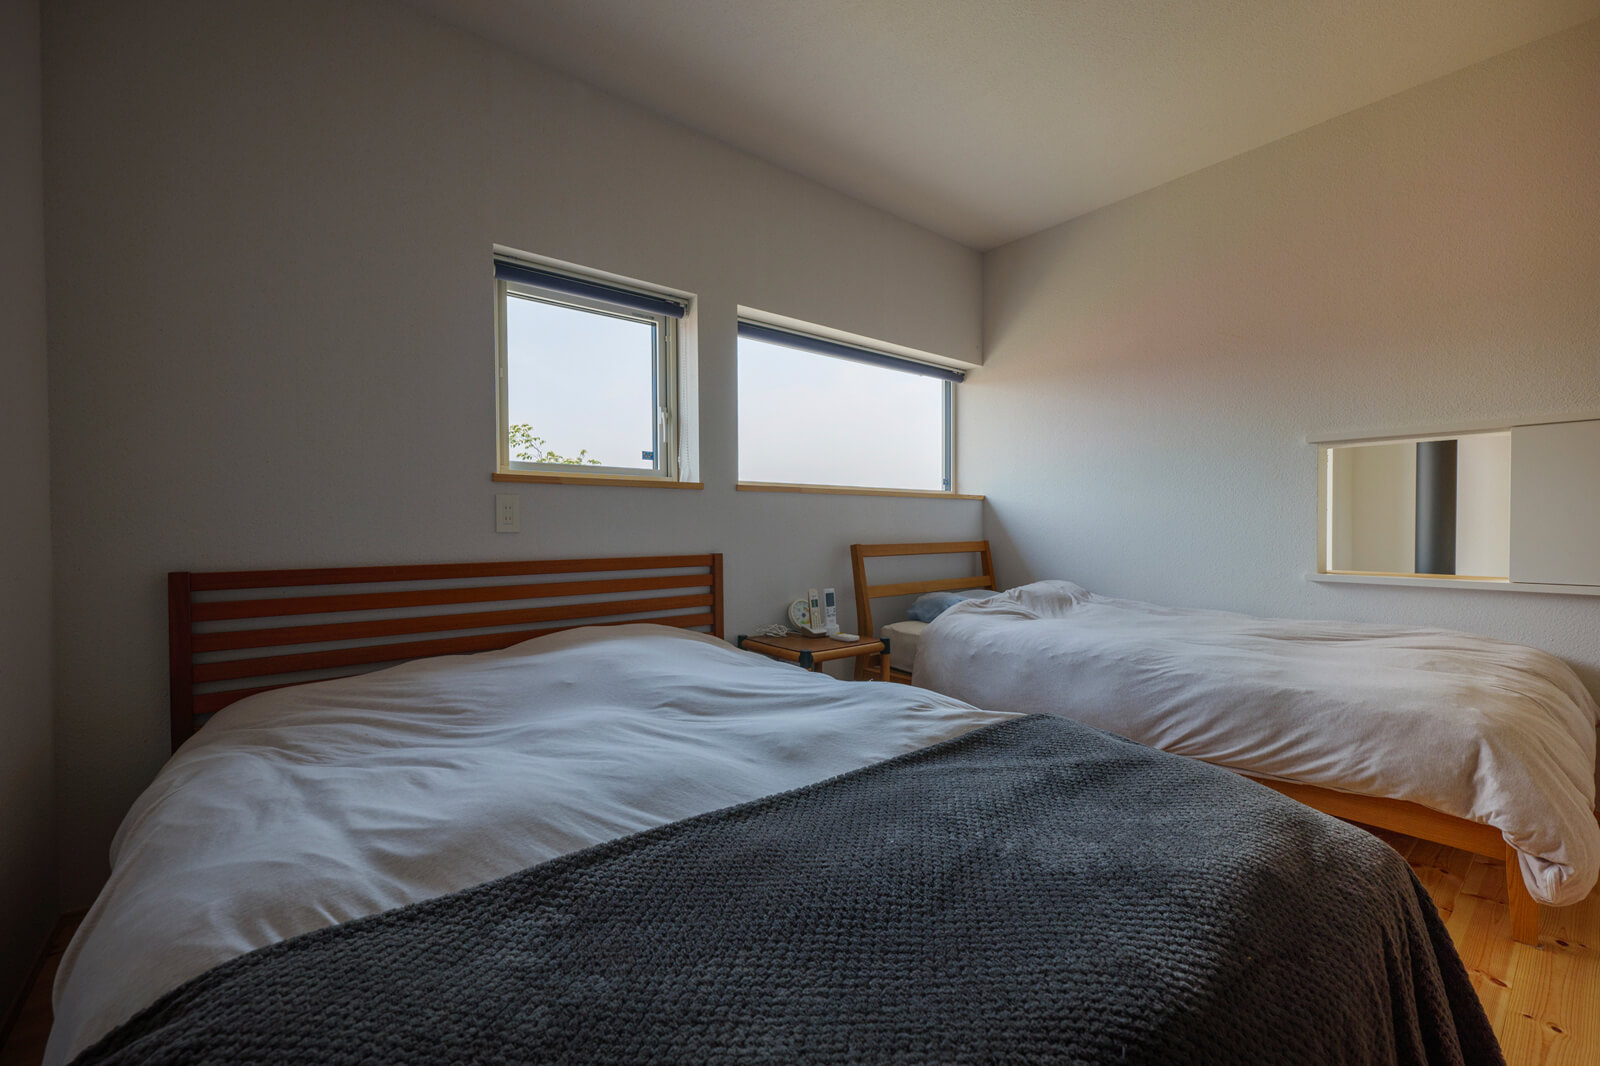 寝室などのプライベートスペースは2階に集約。寝室の小窓からは薪ストーブの暖気を取り入れられる。断熱・気密性能がしっかりとしているため、一年を通してどの部屋も一定の温度が保たれている